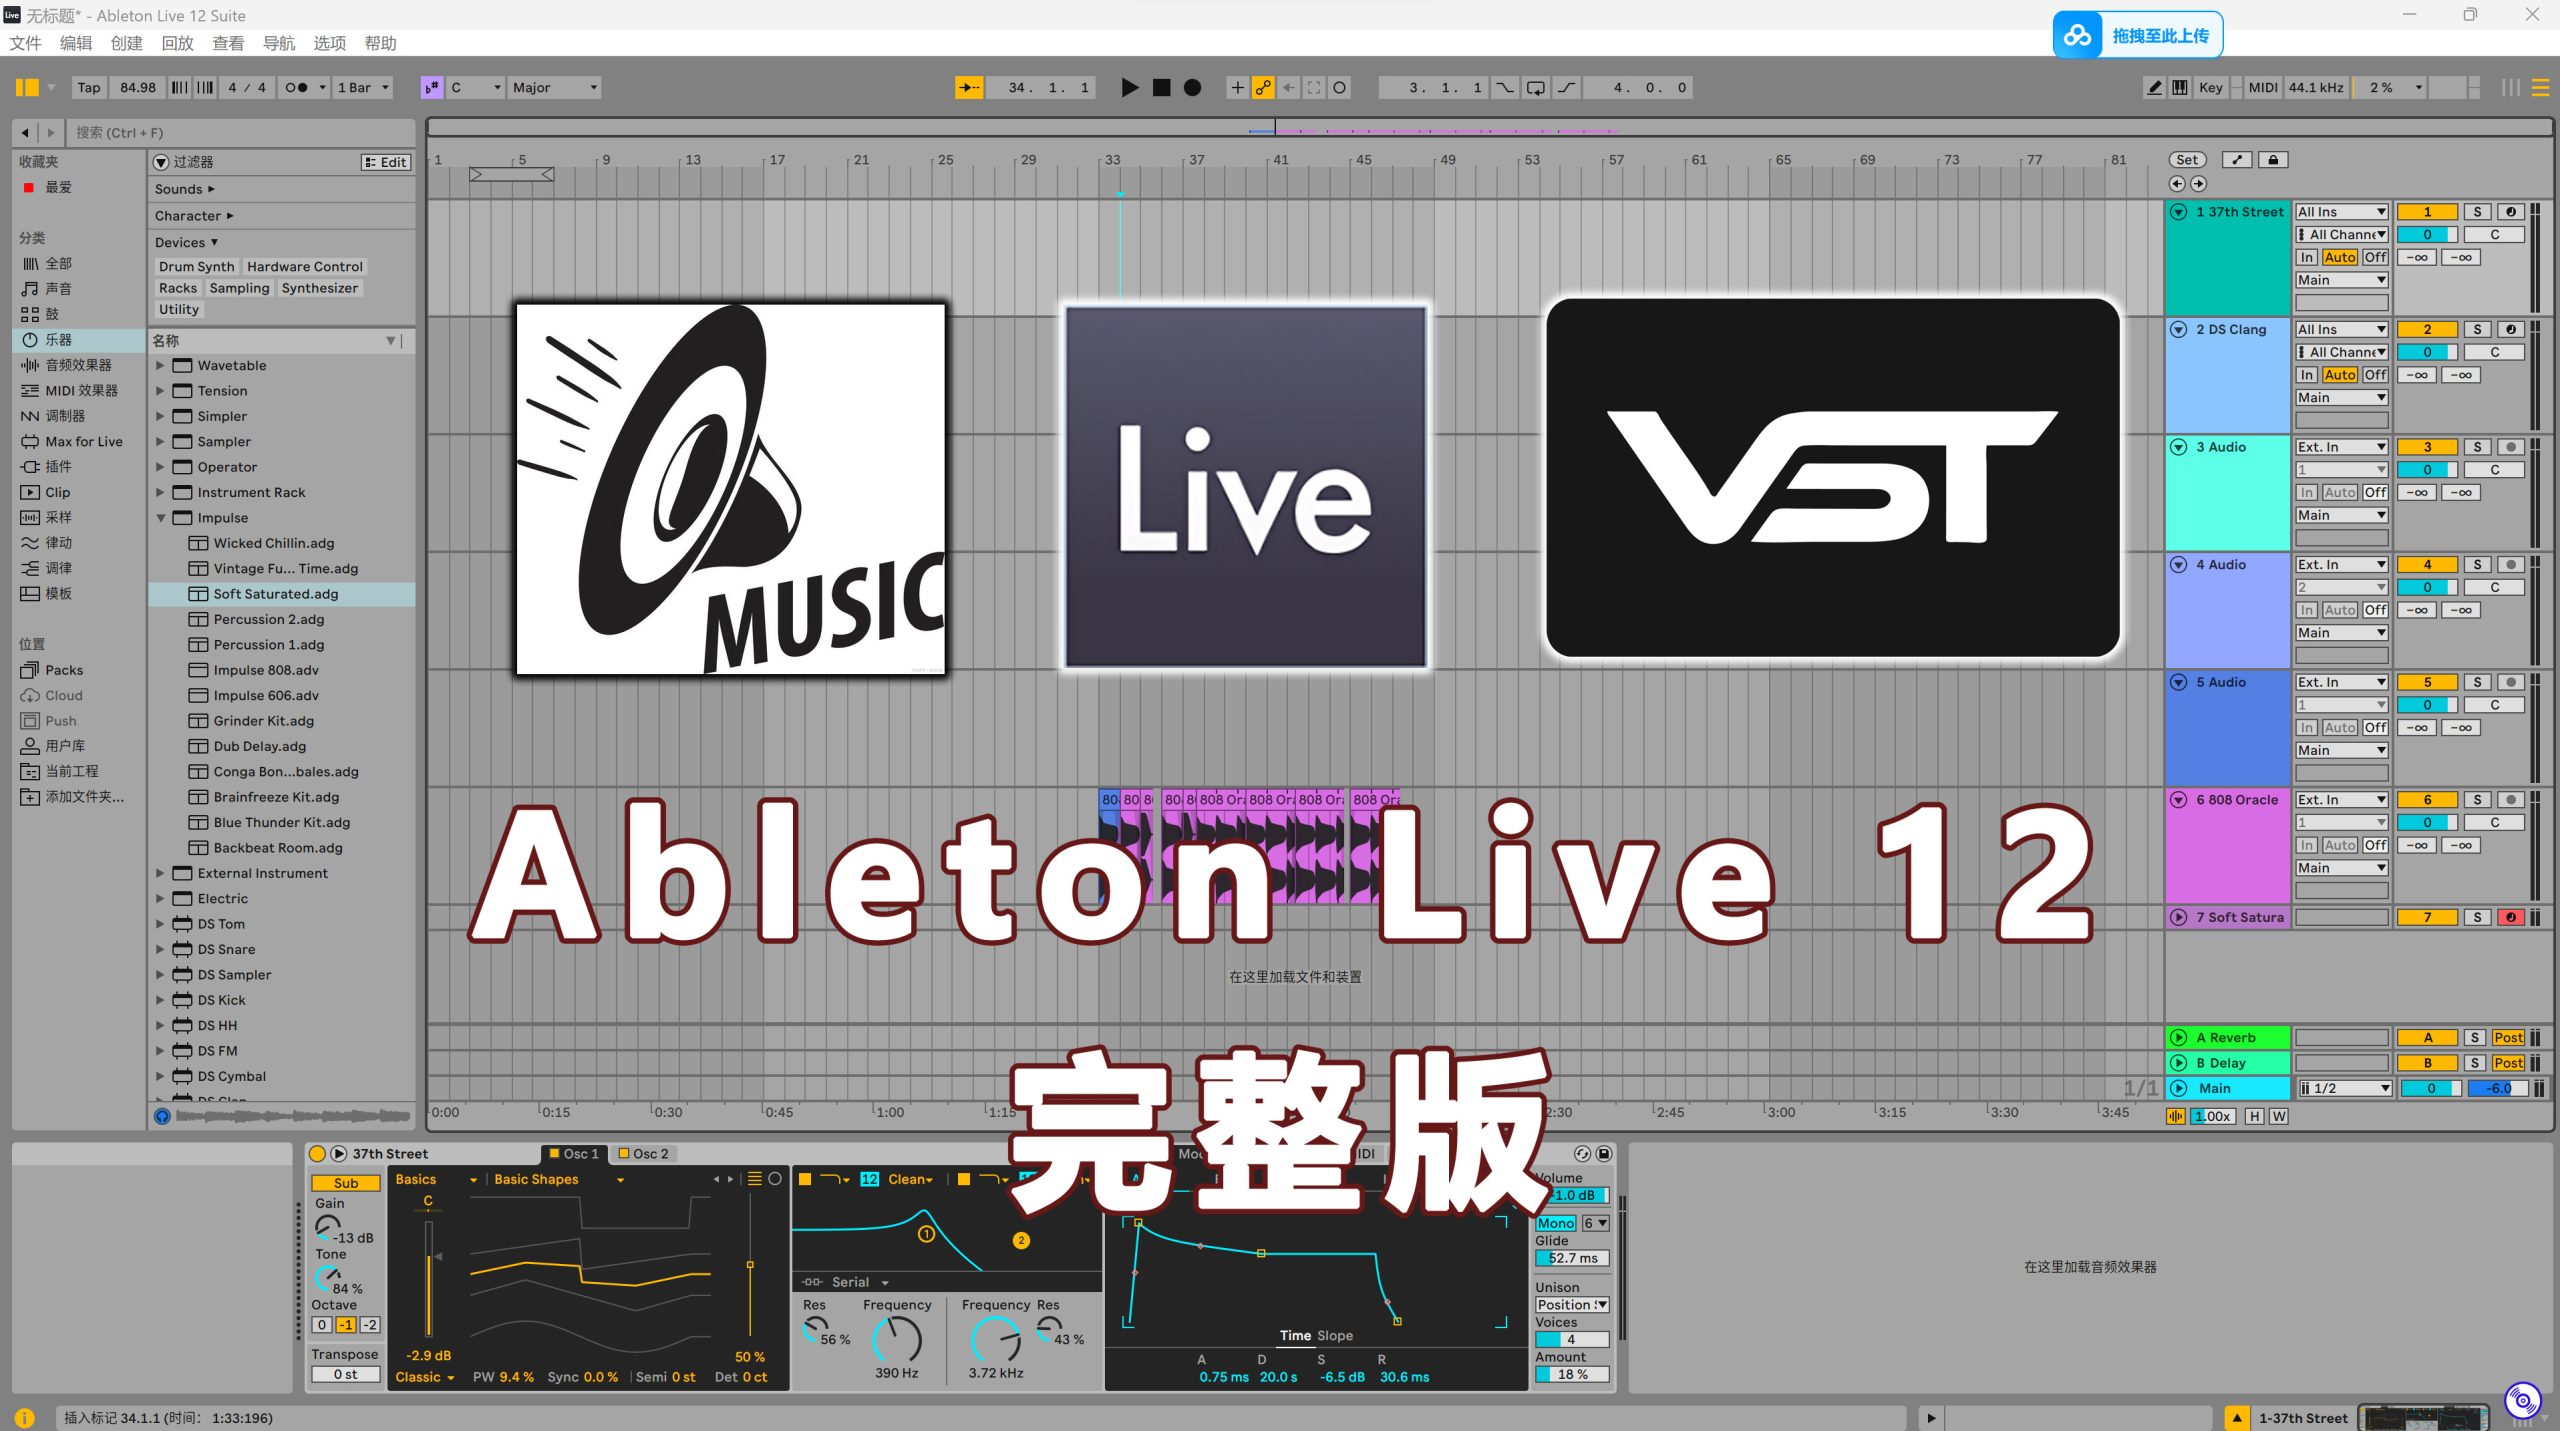 Ableton Live 12软件完整版【软件+完整音色库+Max For Live完整插件+Ableton采样工程】完整250GB套装下载Windows-MacOS